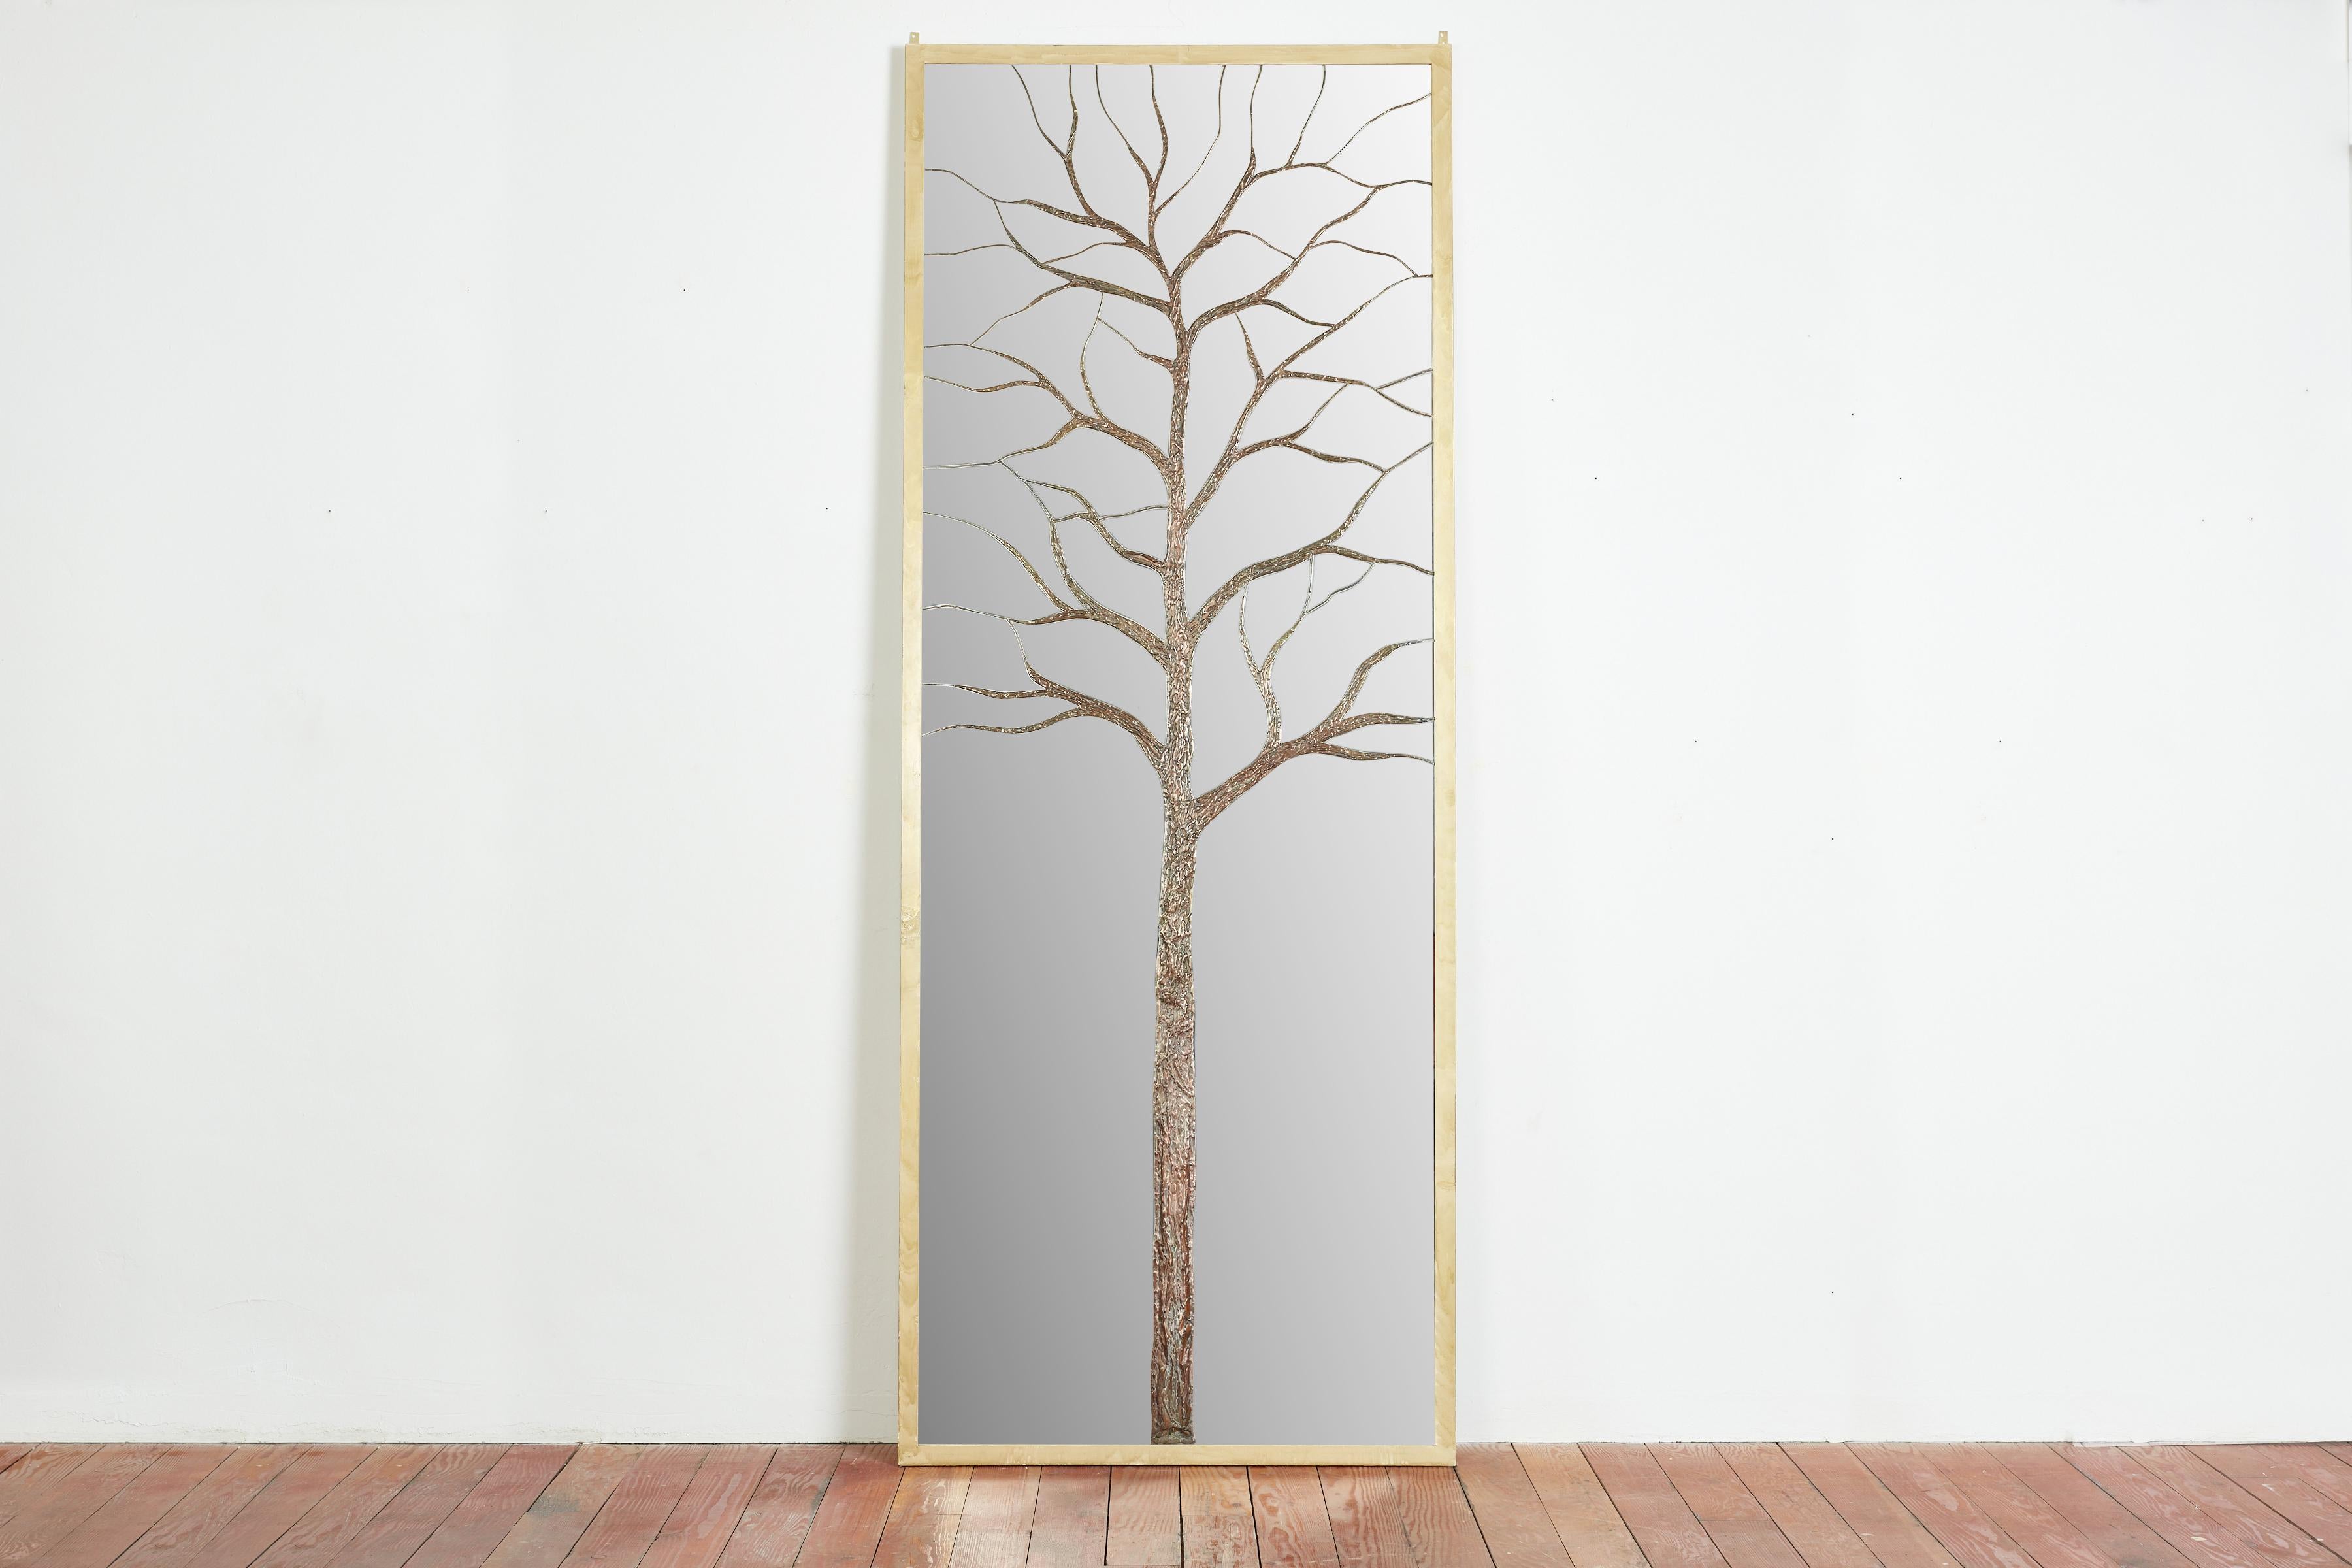 Miroir gigantesque sur pied avec un arbre en bronze et cuivre repoussé qui a été sculpté dans le miroir. 
Une œuvre d'art d'une grande beauté 
Cadre métallique en laiton doré - 
Signature sur le miroir - 
Italie, 1965 
Unique en son genre
